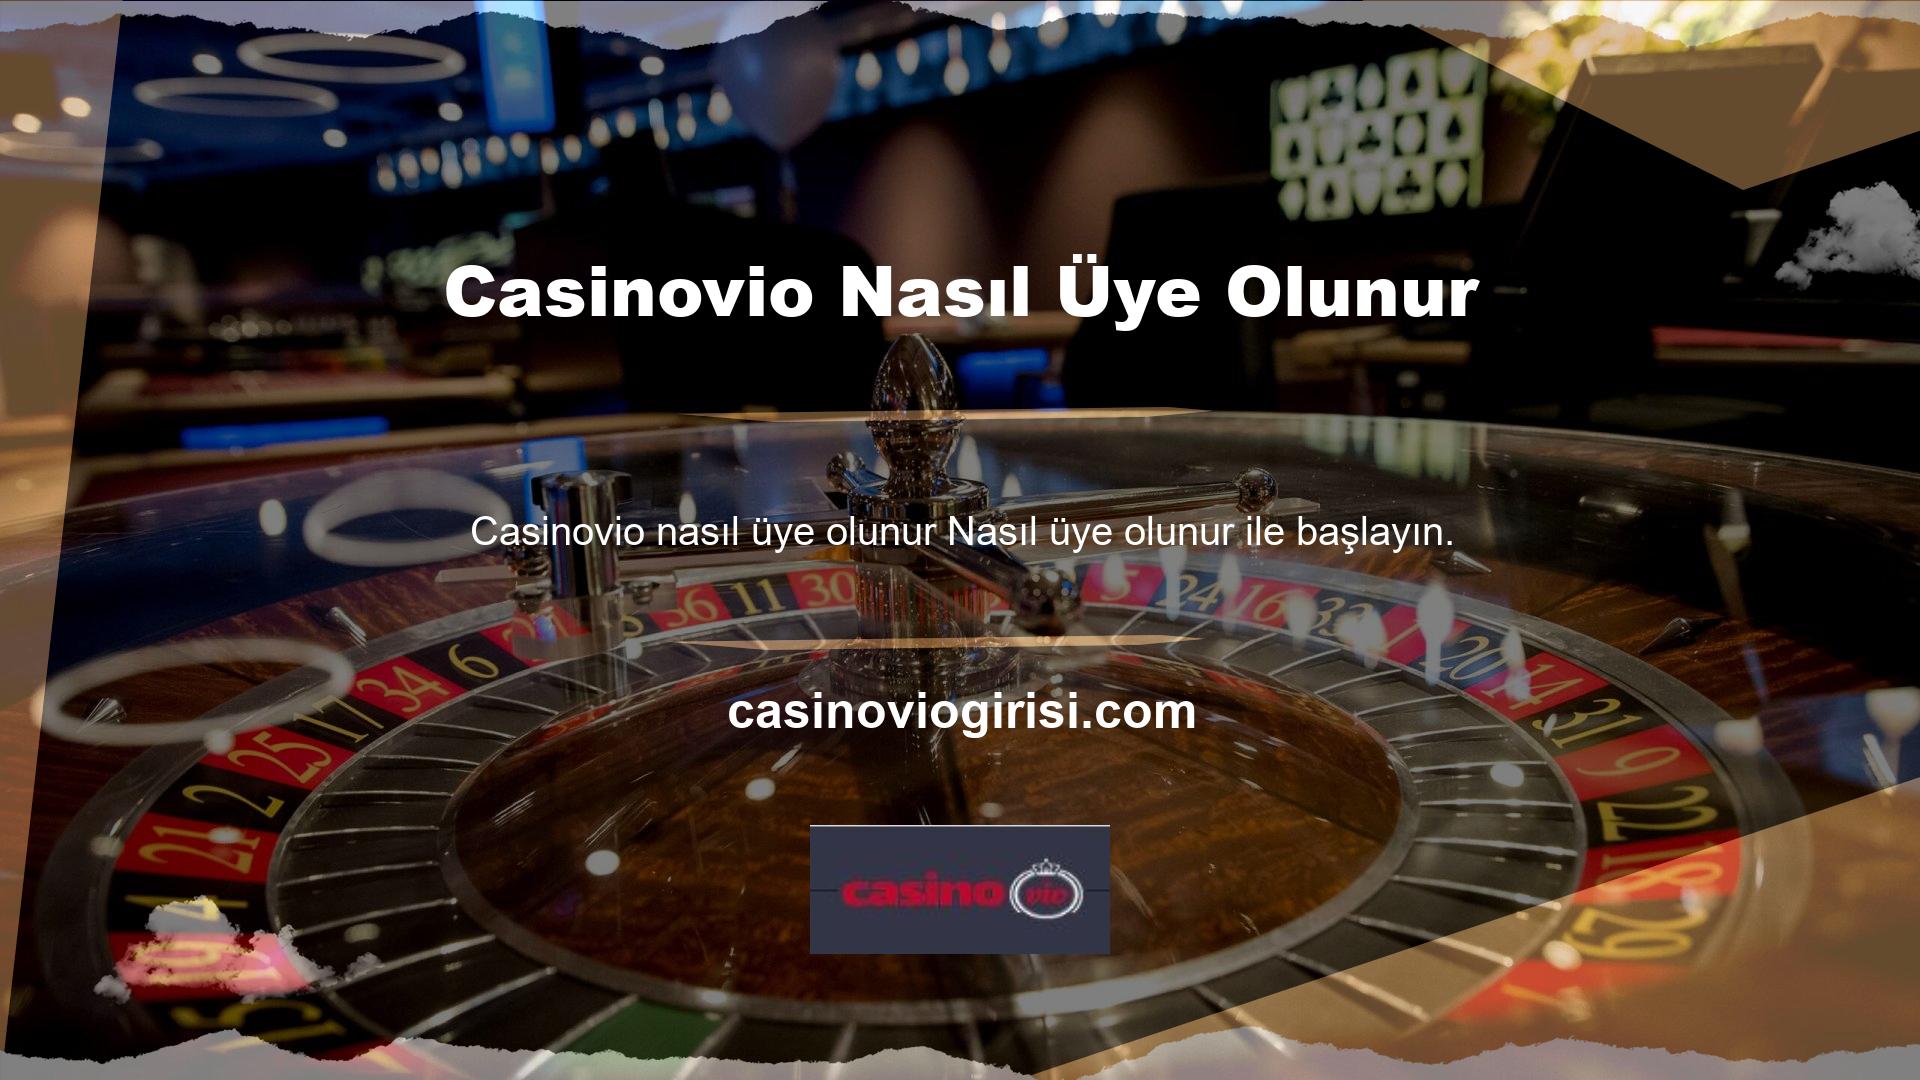 Üye olmak isterseniz size verdiğimiz linkteki Casinovio giriş butonunu kullanarak Casinovio giriş yapabilirsiniz